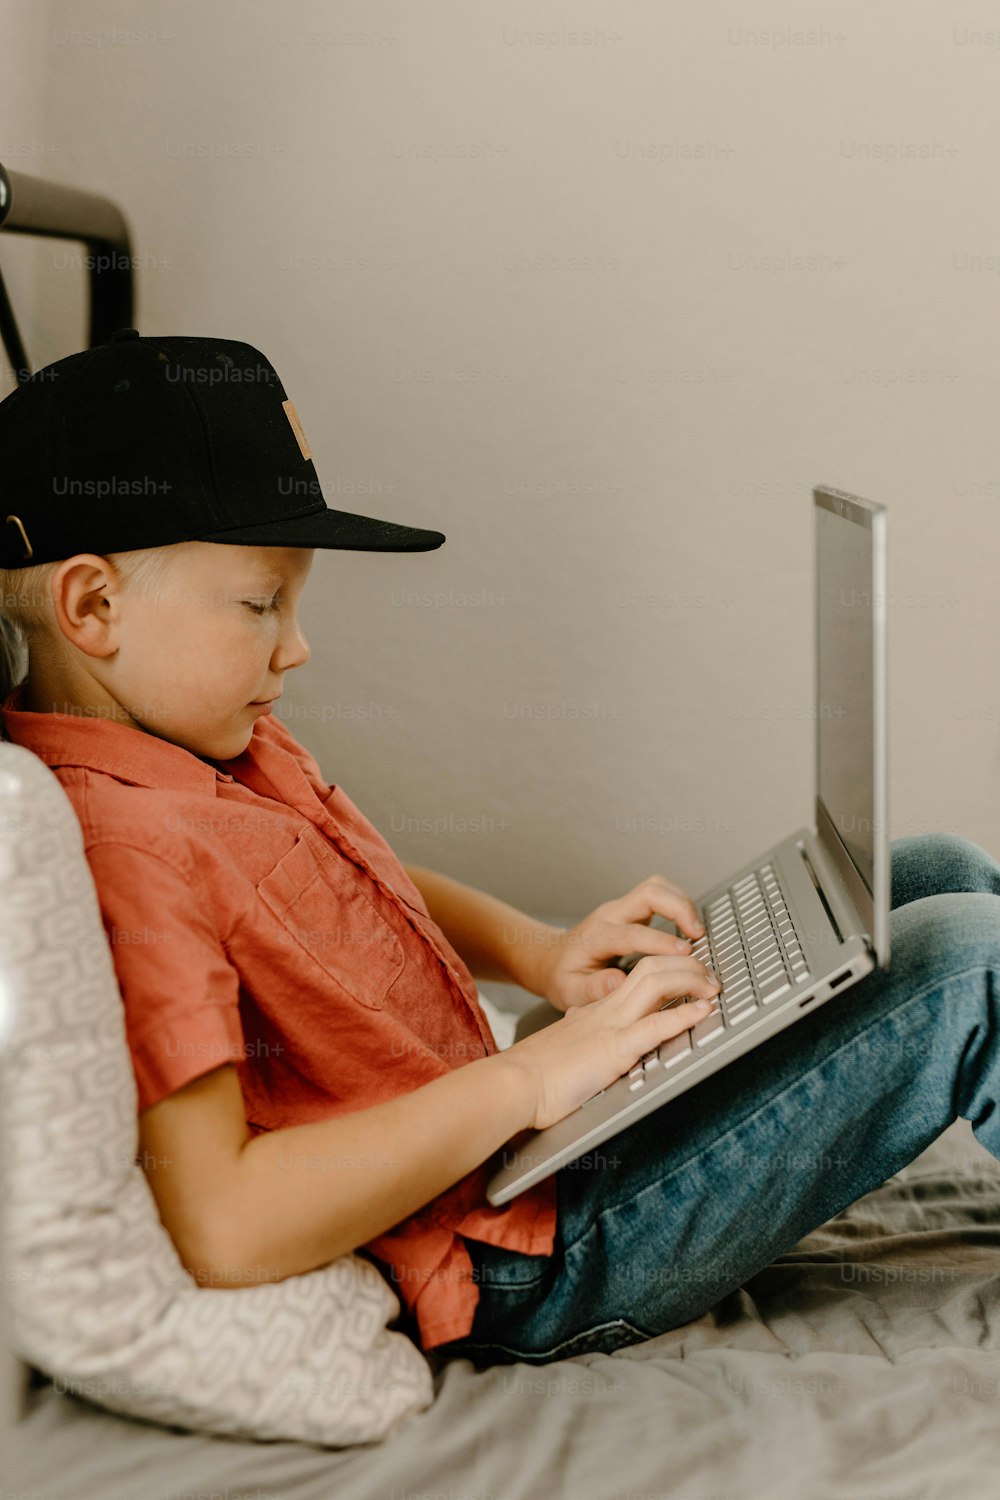 Un niño sentado en una cama usando una computadora portátil